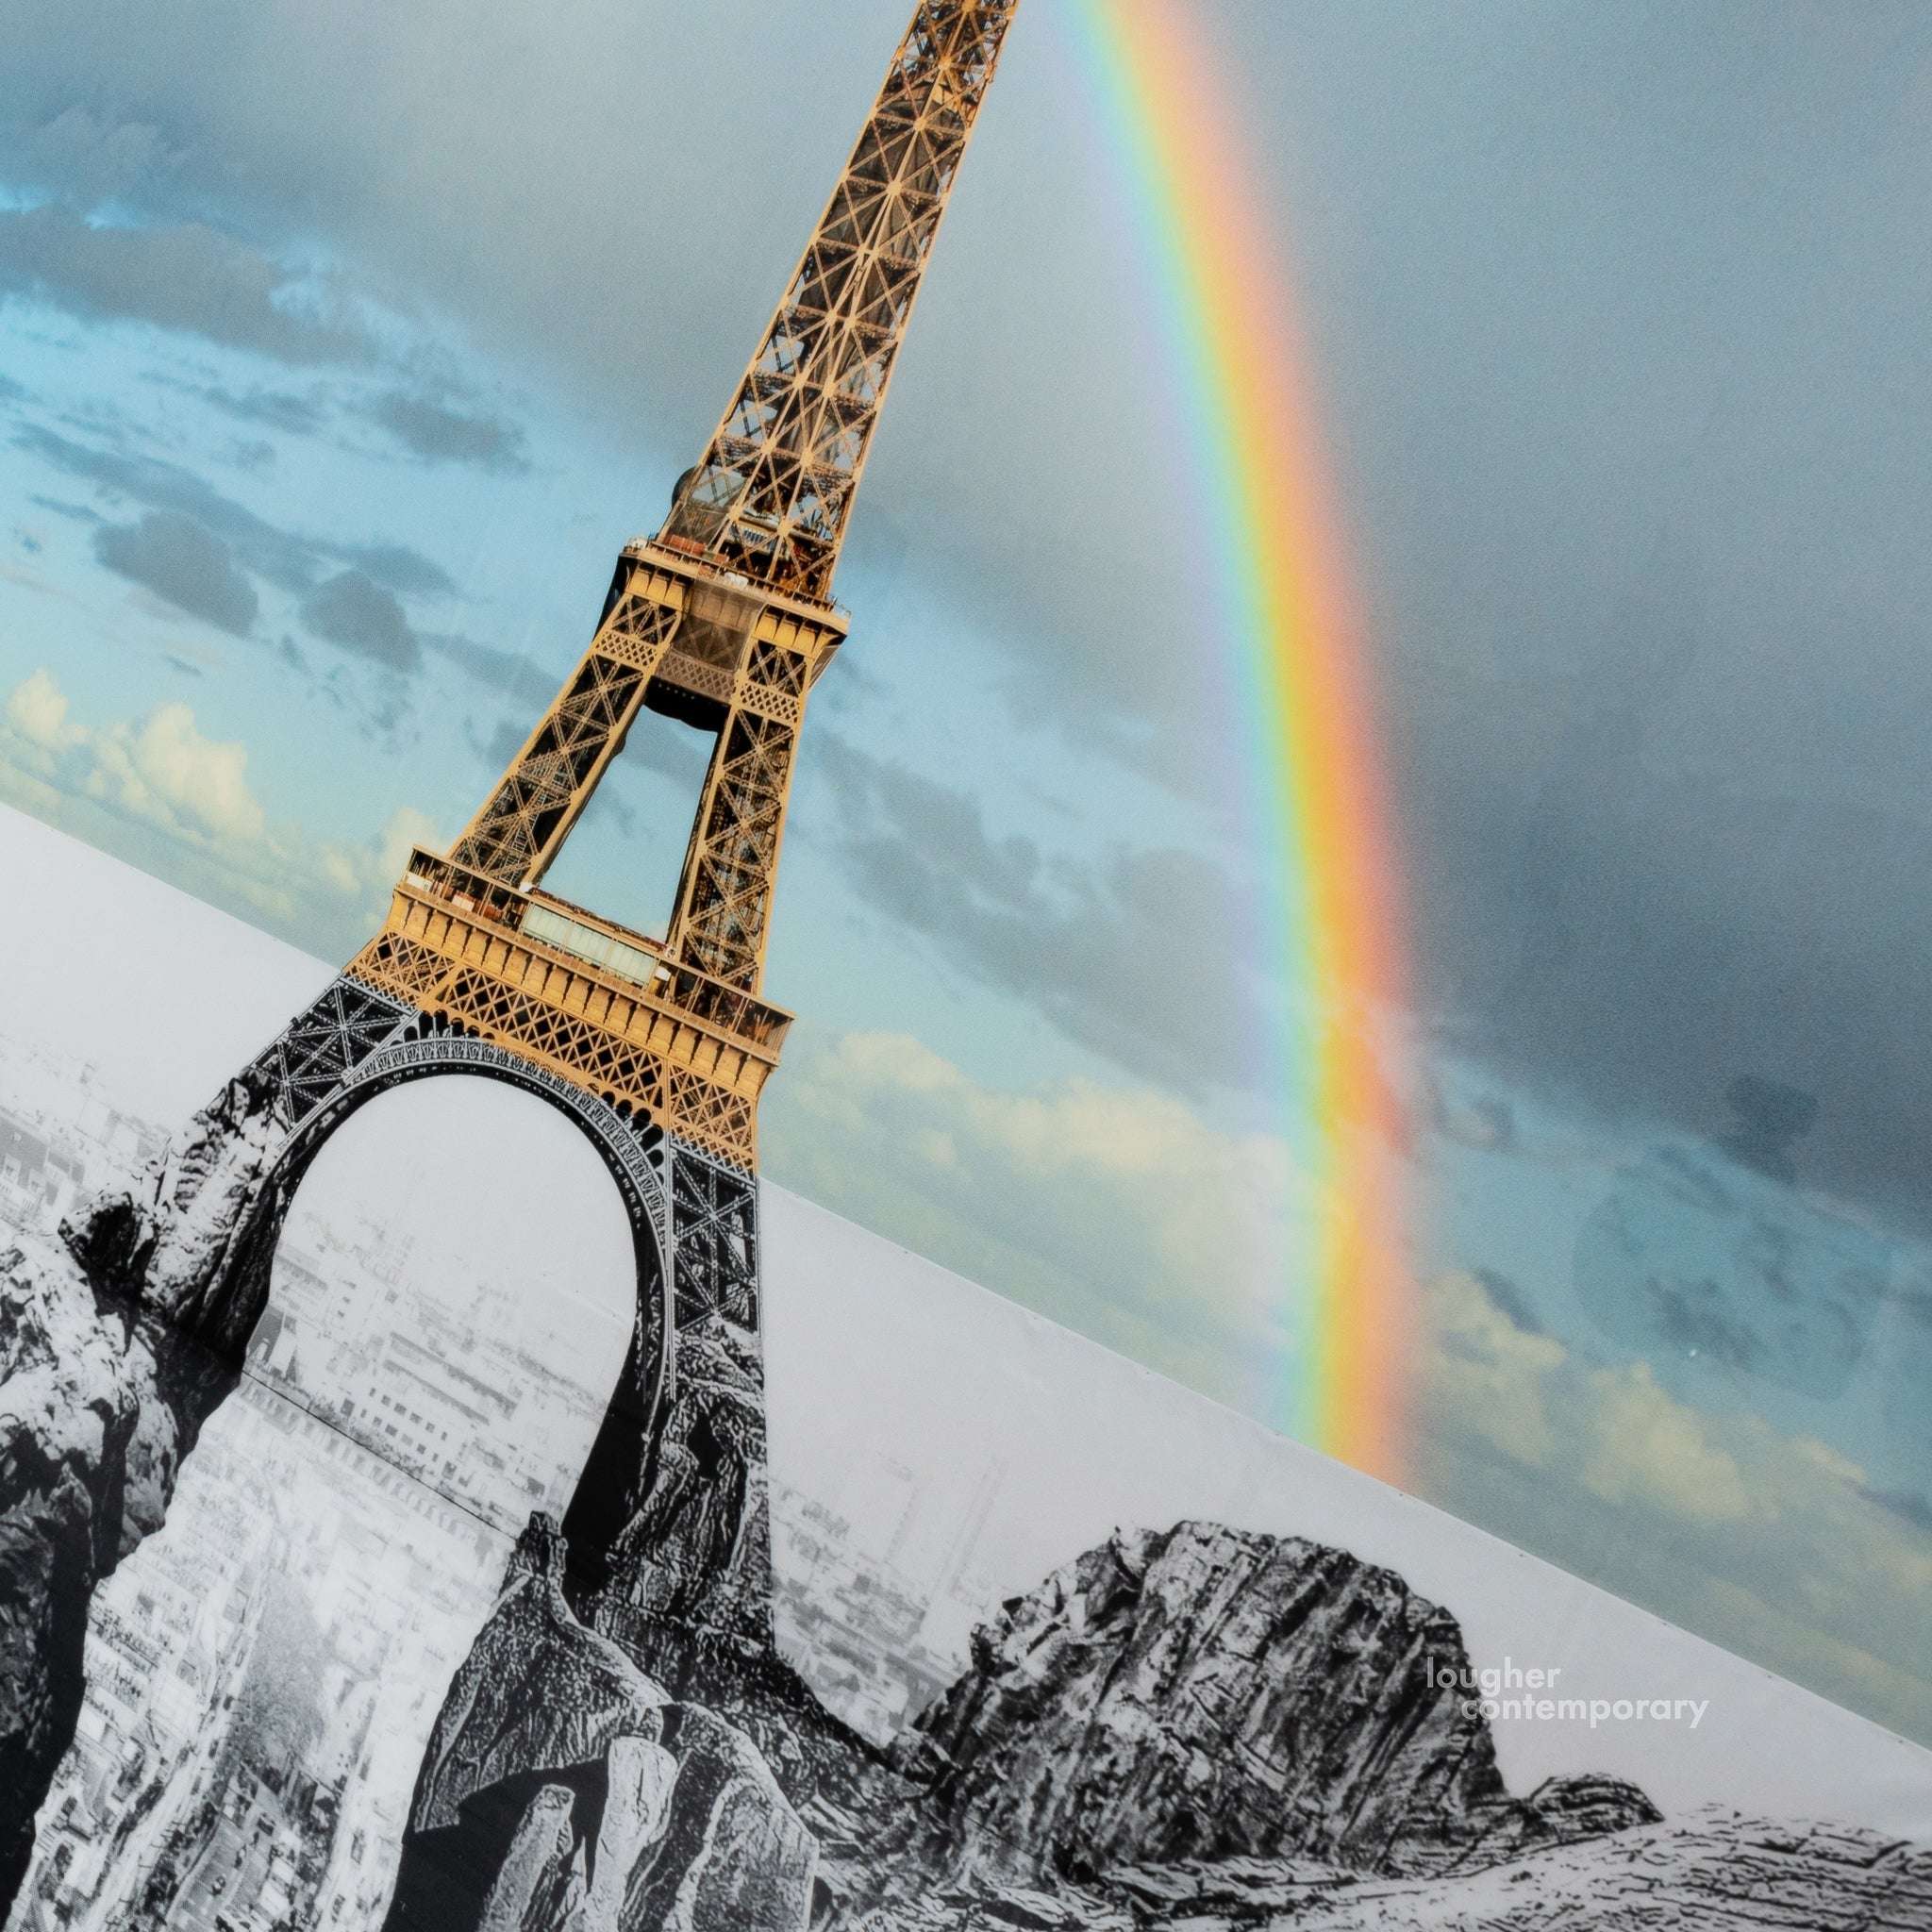 JR, Trompe l'oeil, Les Falaises du Trocadéro, 21 mai 2021, 20h03, Paris, France, 2021, 2021 For Sale - Lougher Contemporary